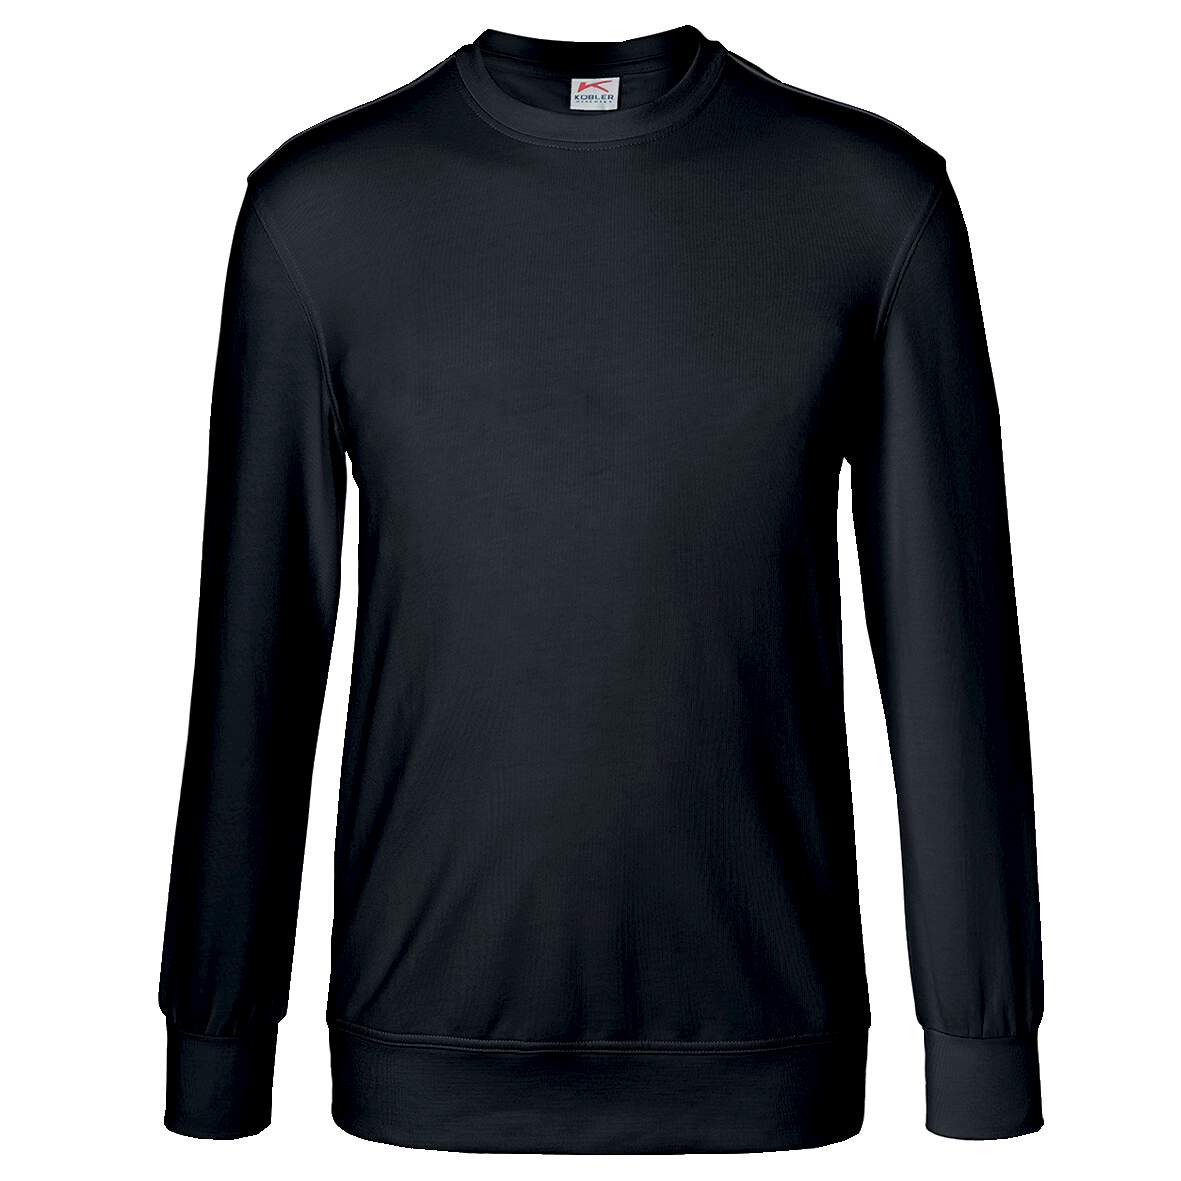 1253920 - Sweatshirt schwarz Gr.M 